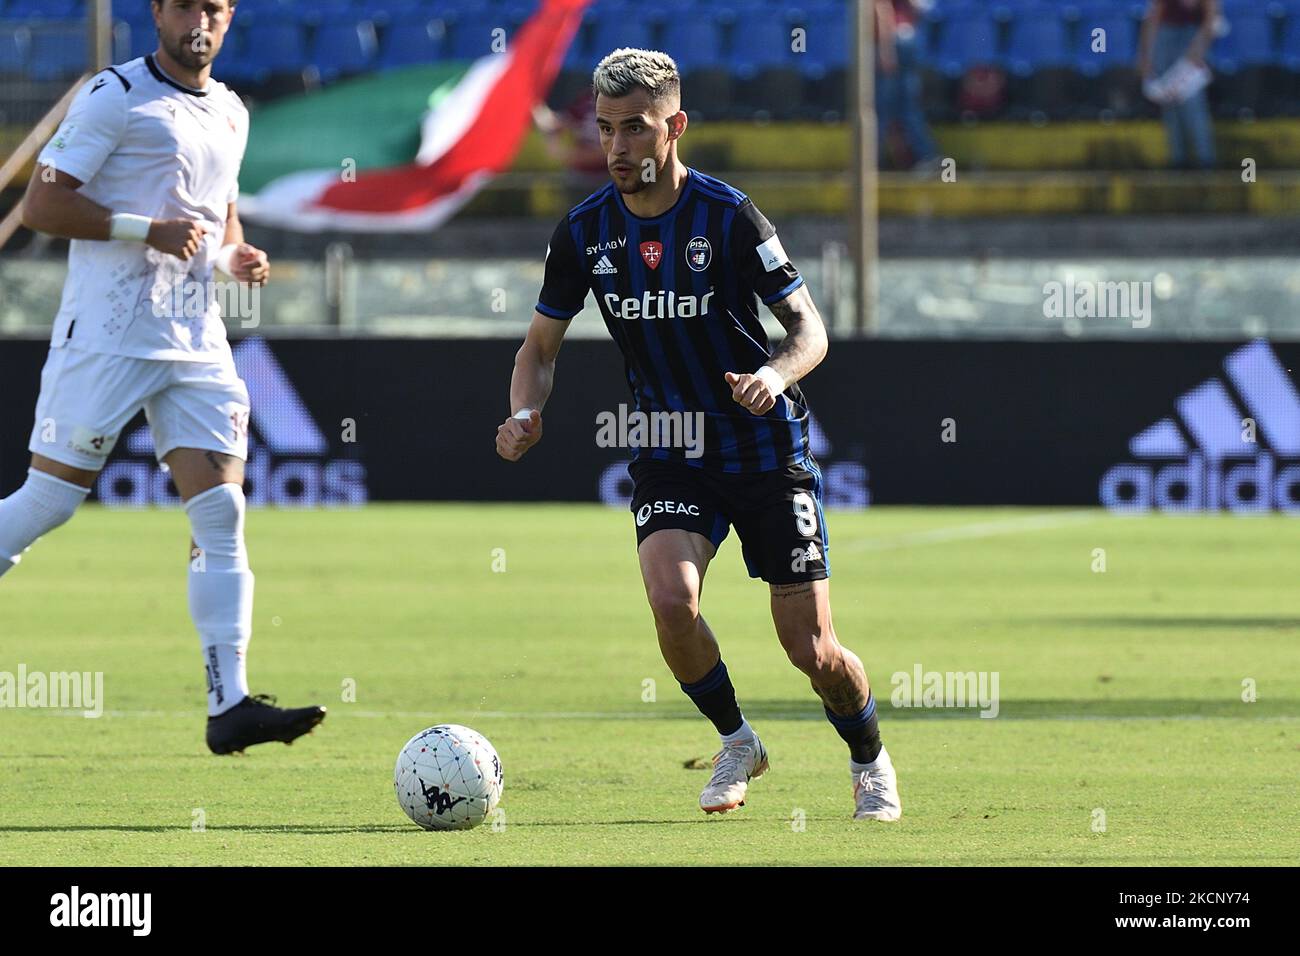 Carlo Rivetti Acquires Modena Football Club